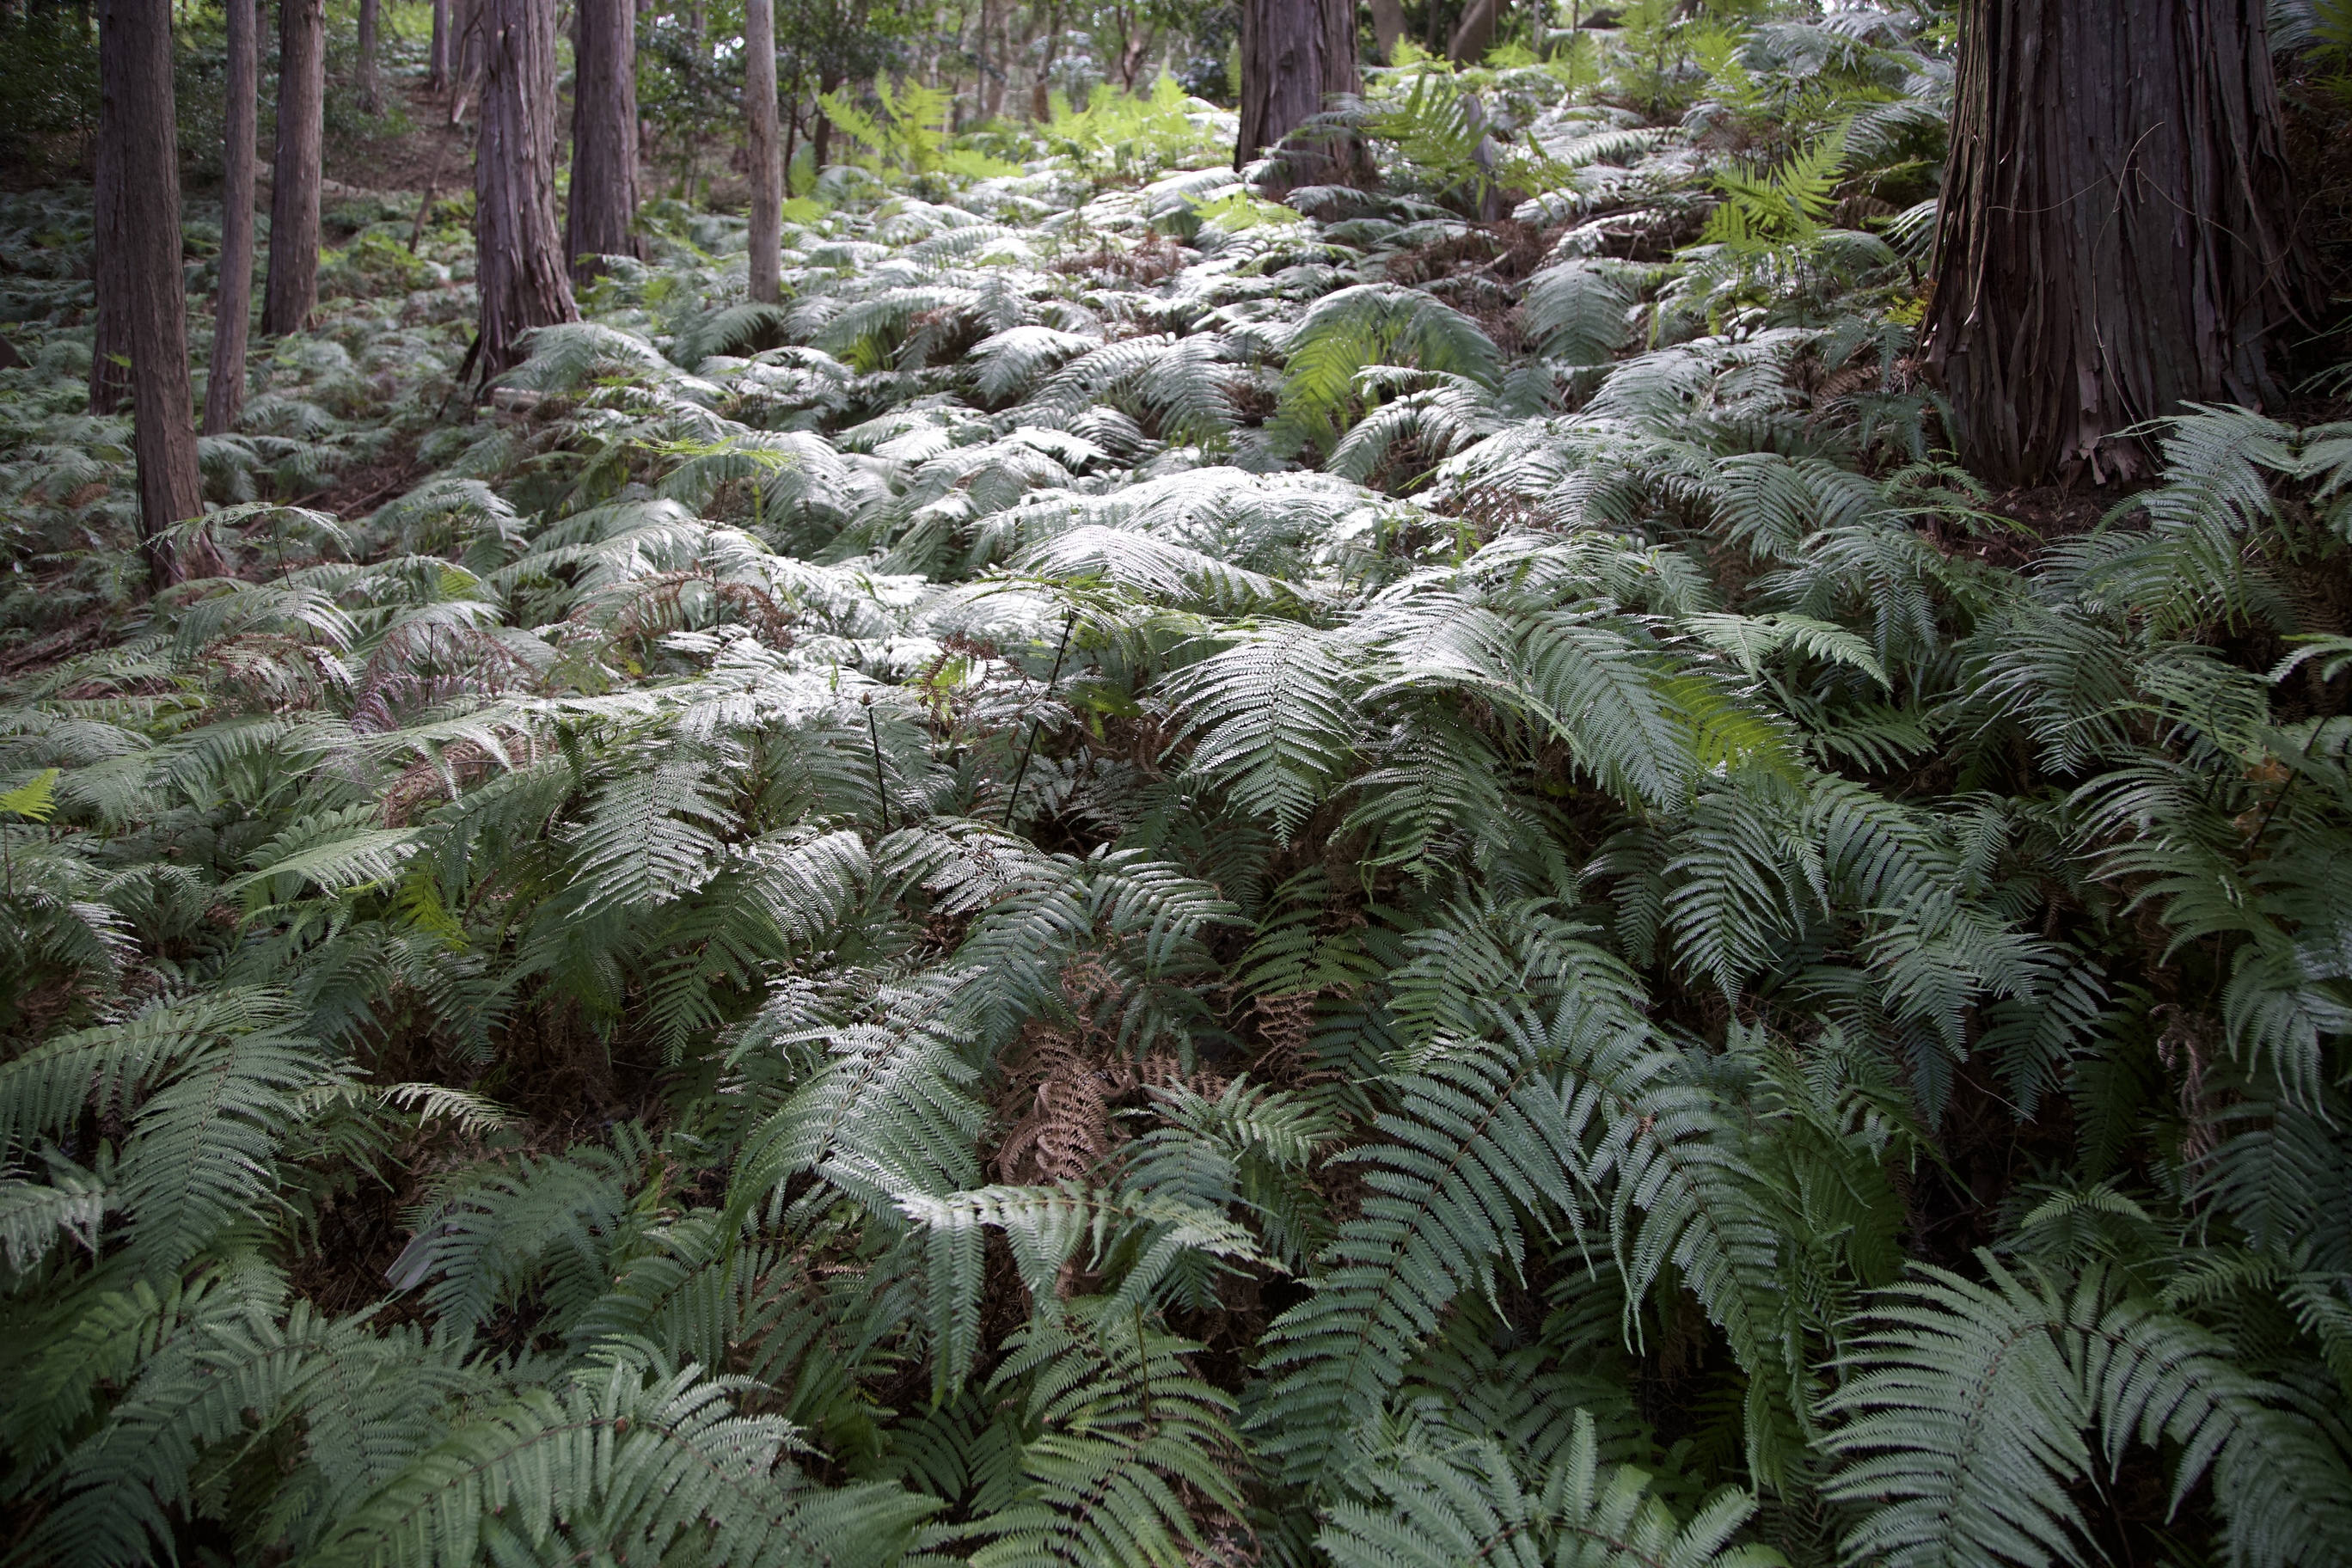 ウラジロとコシダが、林の下に広がっている写真です。どちらもシダの仲間で、横山ではよく見られます。